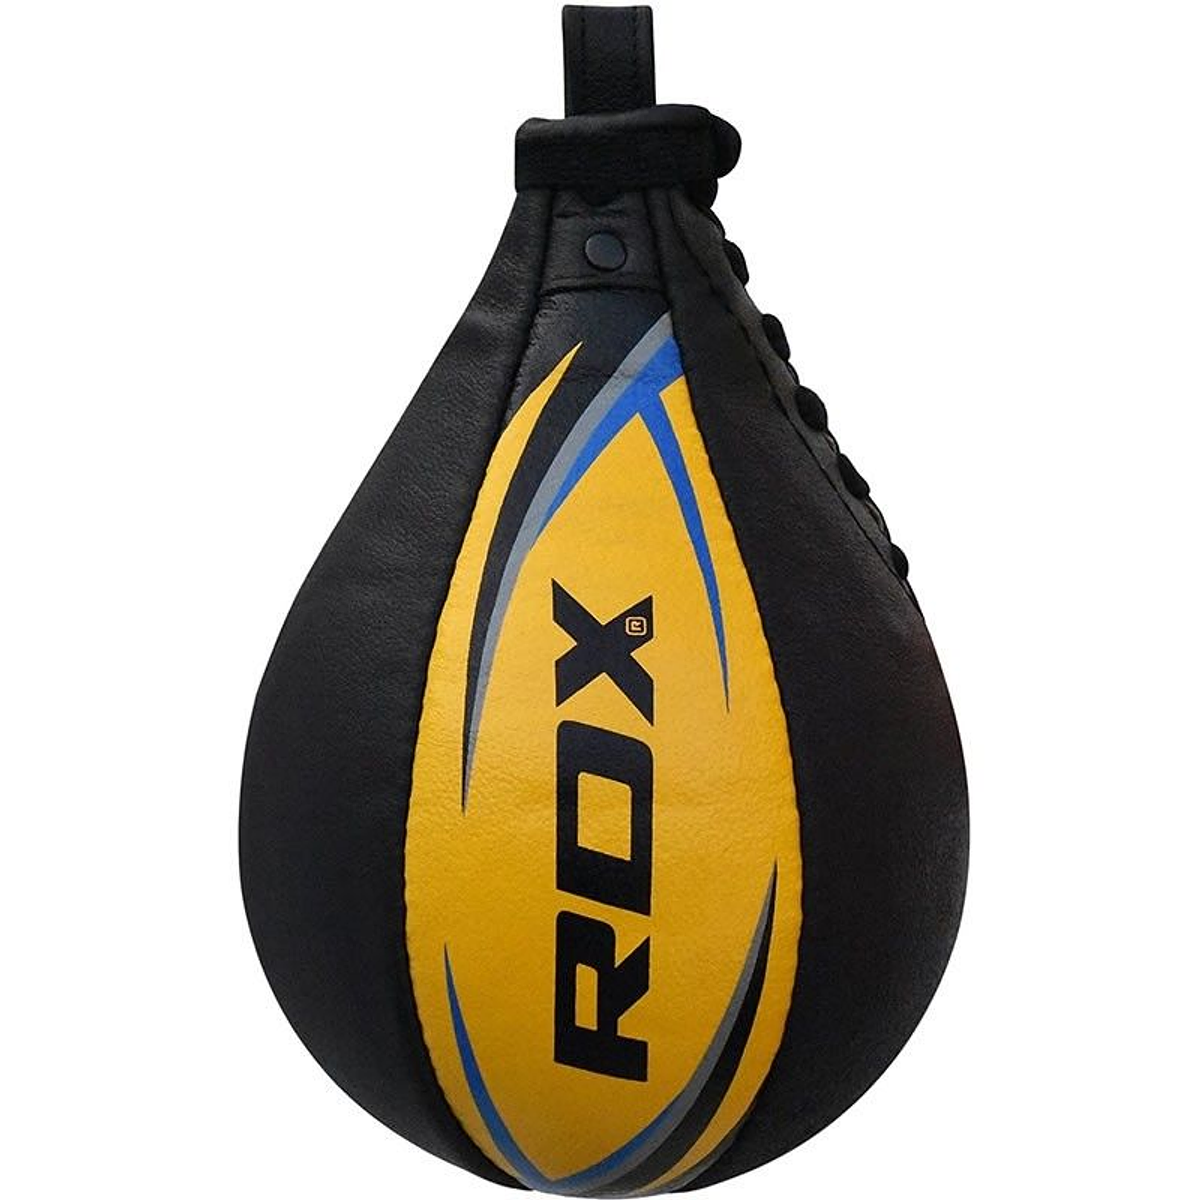 RDX RR Saco de Boxeo Wrecking Ball